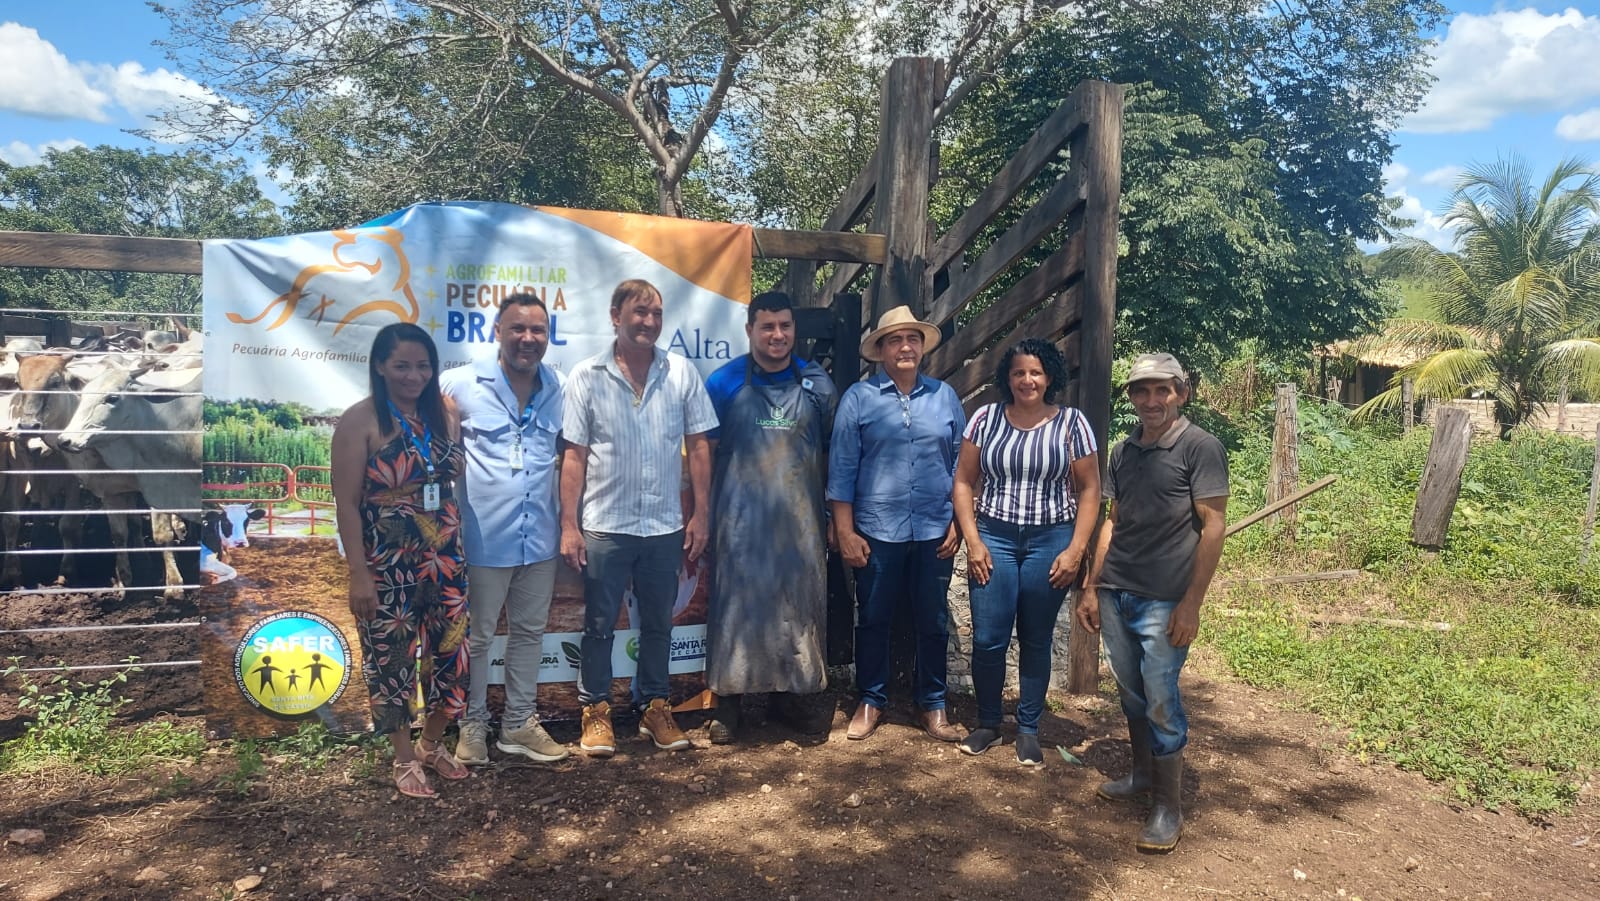 +PECUÁRIA BRASIL: em Santa Rita de Cássia, a revolução genética chega para contar a nova história da pecuária agrofamiliar baiana